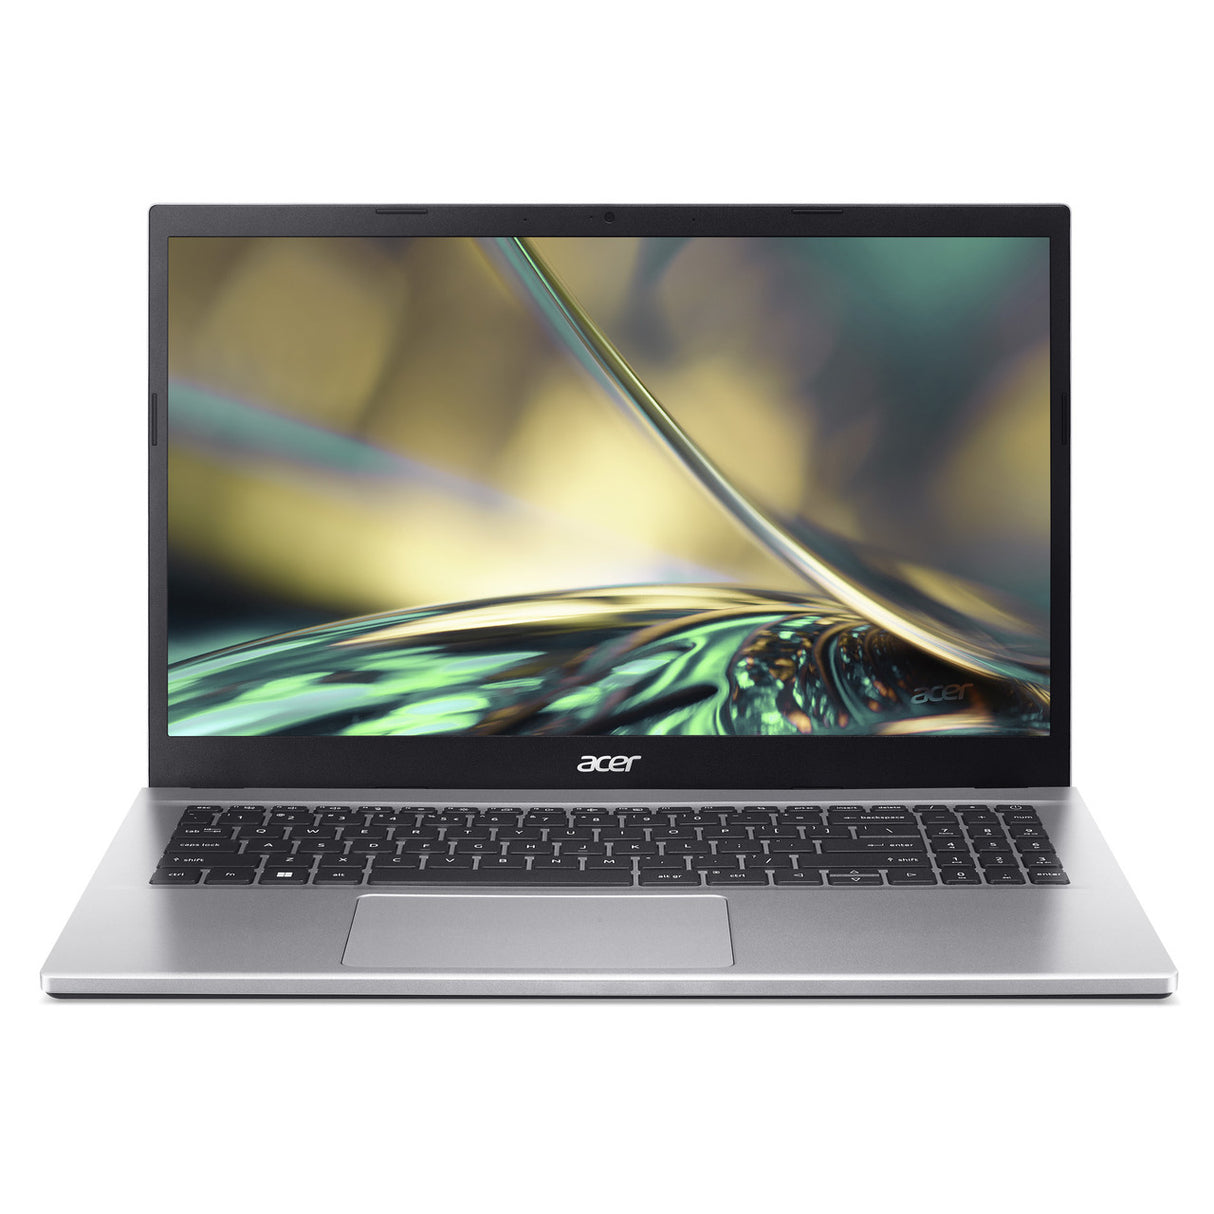 Laptop 15.6'' Acer Aspire 5 A515-45G-R3KH Full HD, AMD Ryzen 3 5300U 2.60GHz, 8GB, 256GB SSD, Windows 10 Home 64-bit, Español, Plata - NX.A88AL.001